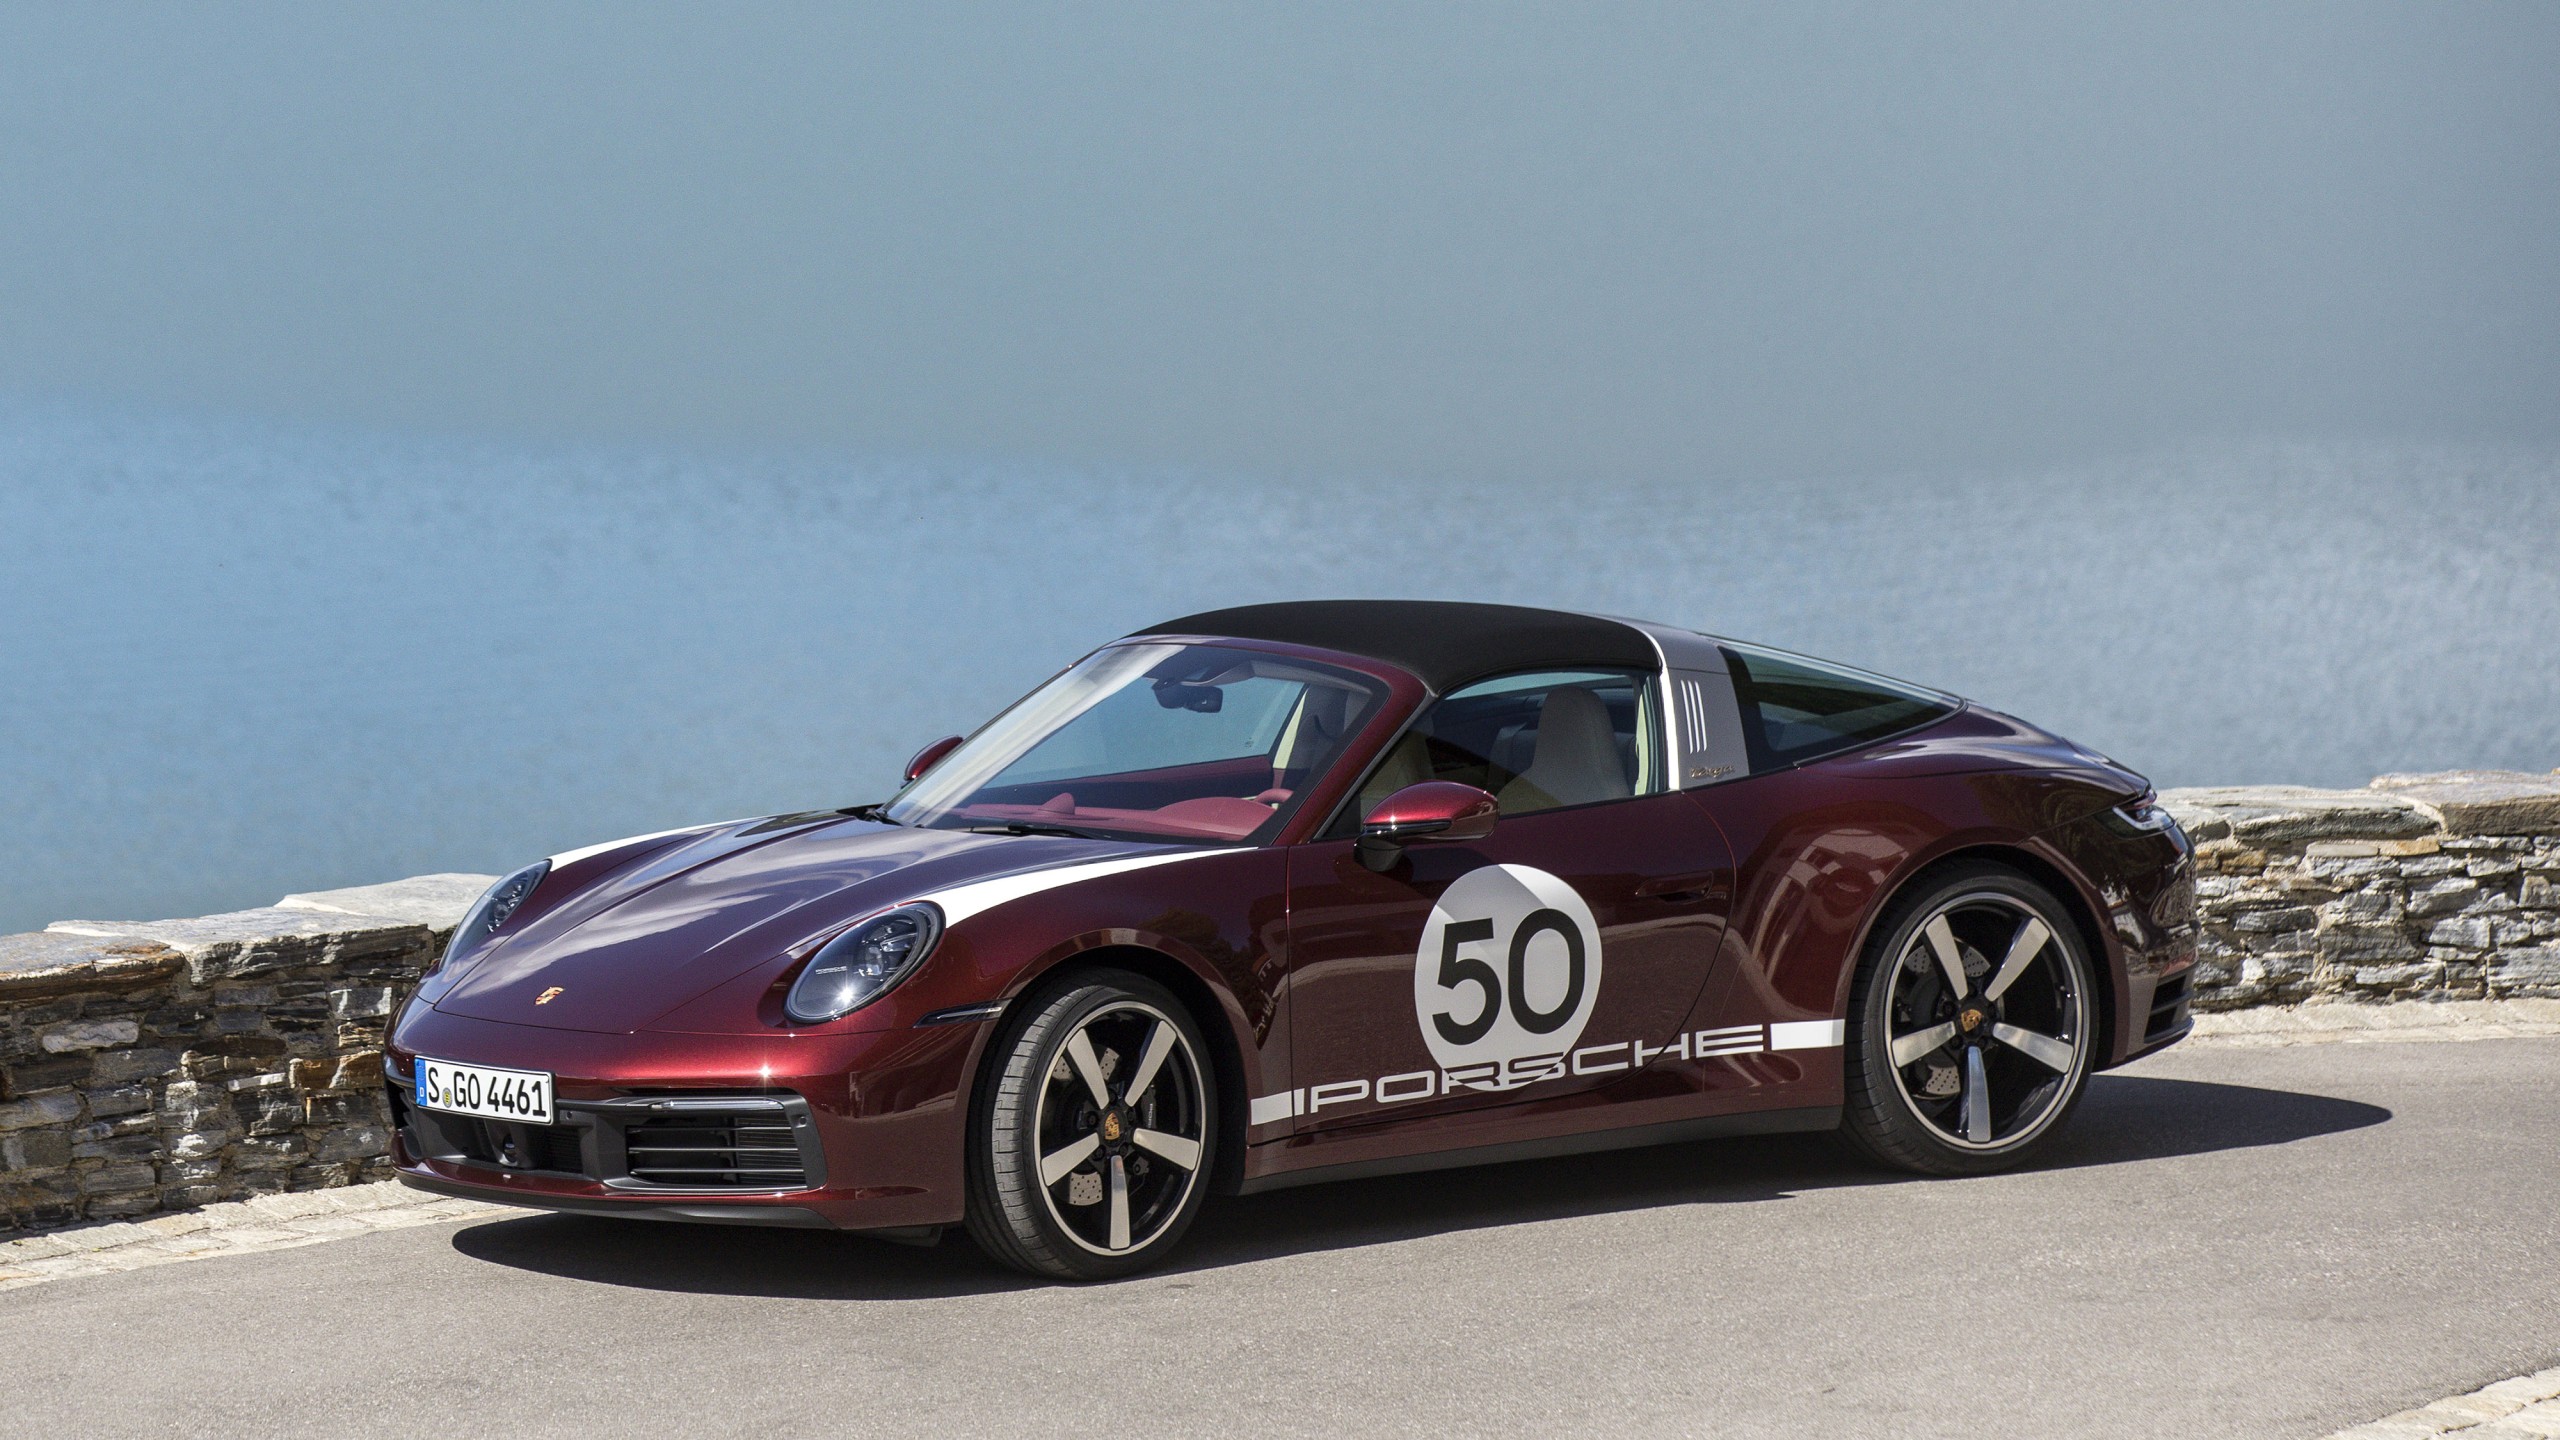 Porsche 911 Targa Hd Cars 4k Wallpapers Images Backgr - vrogue.co